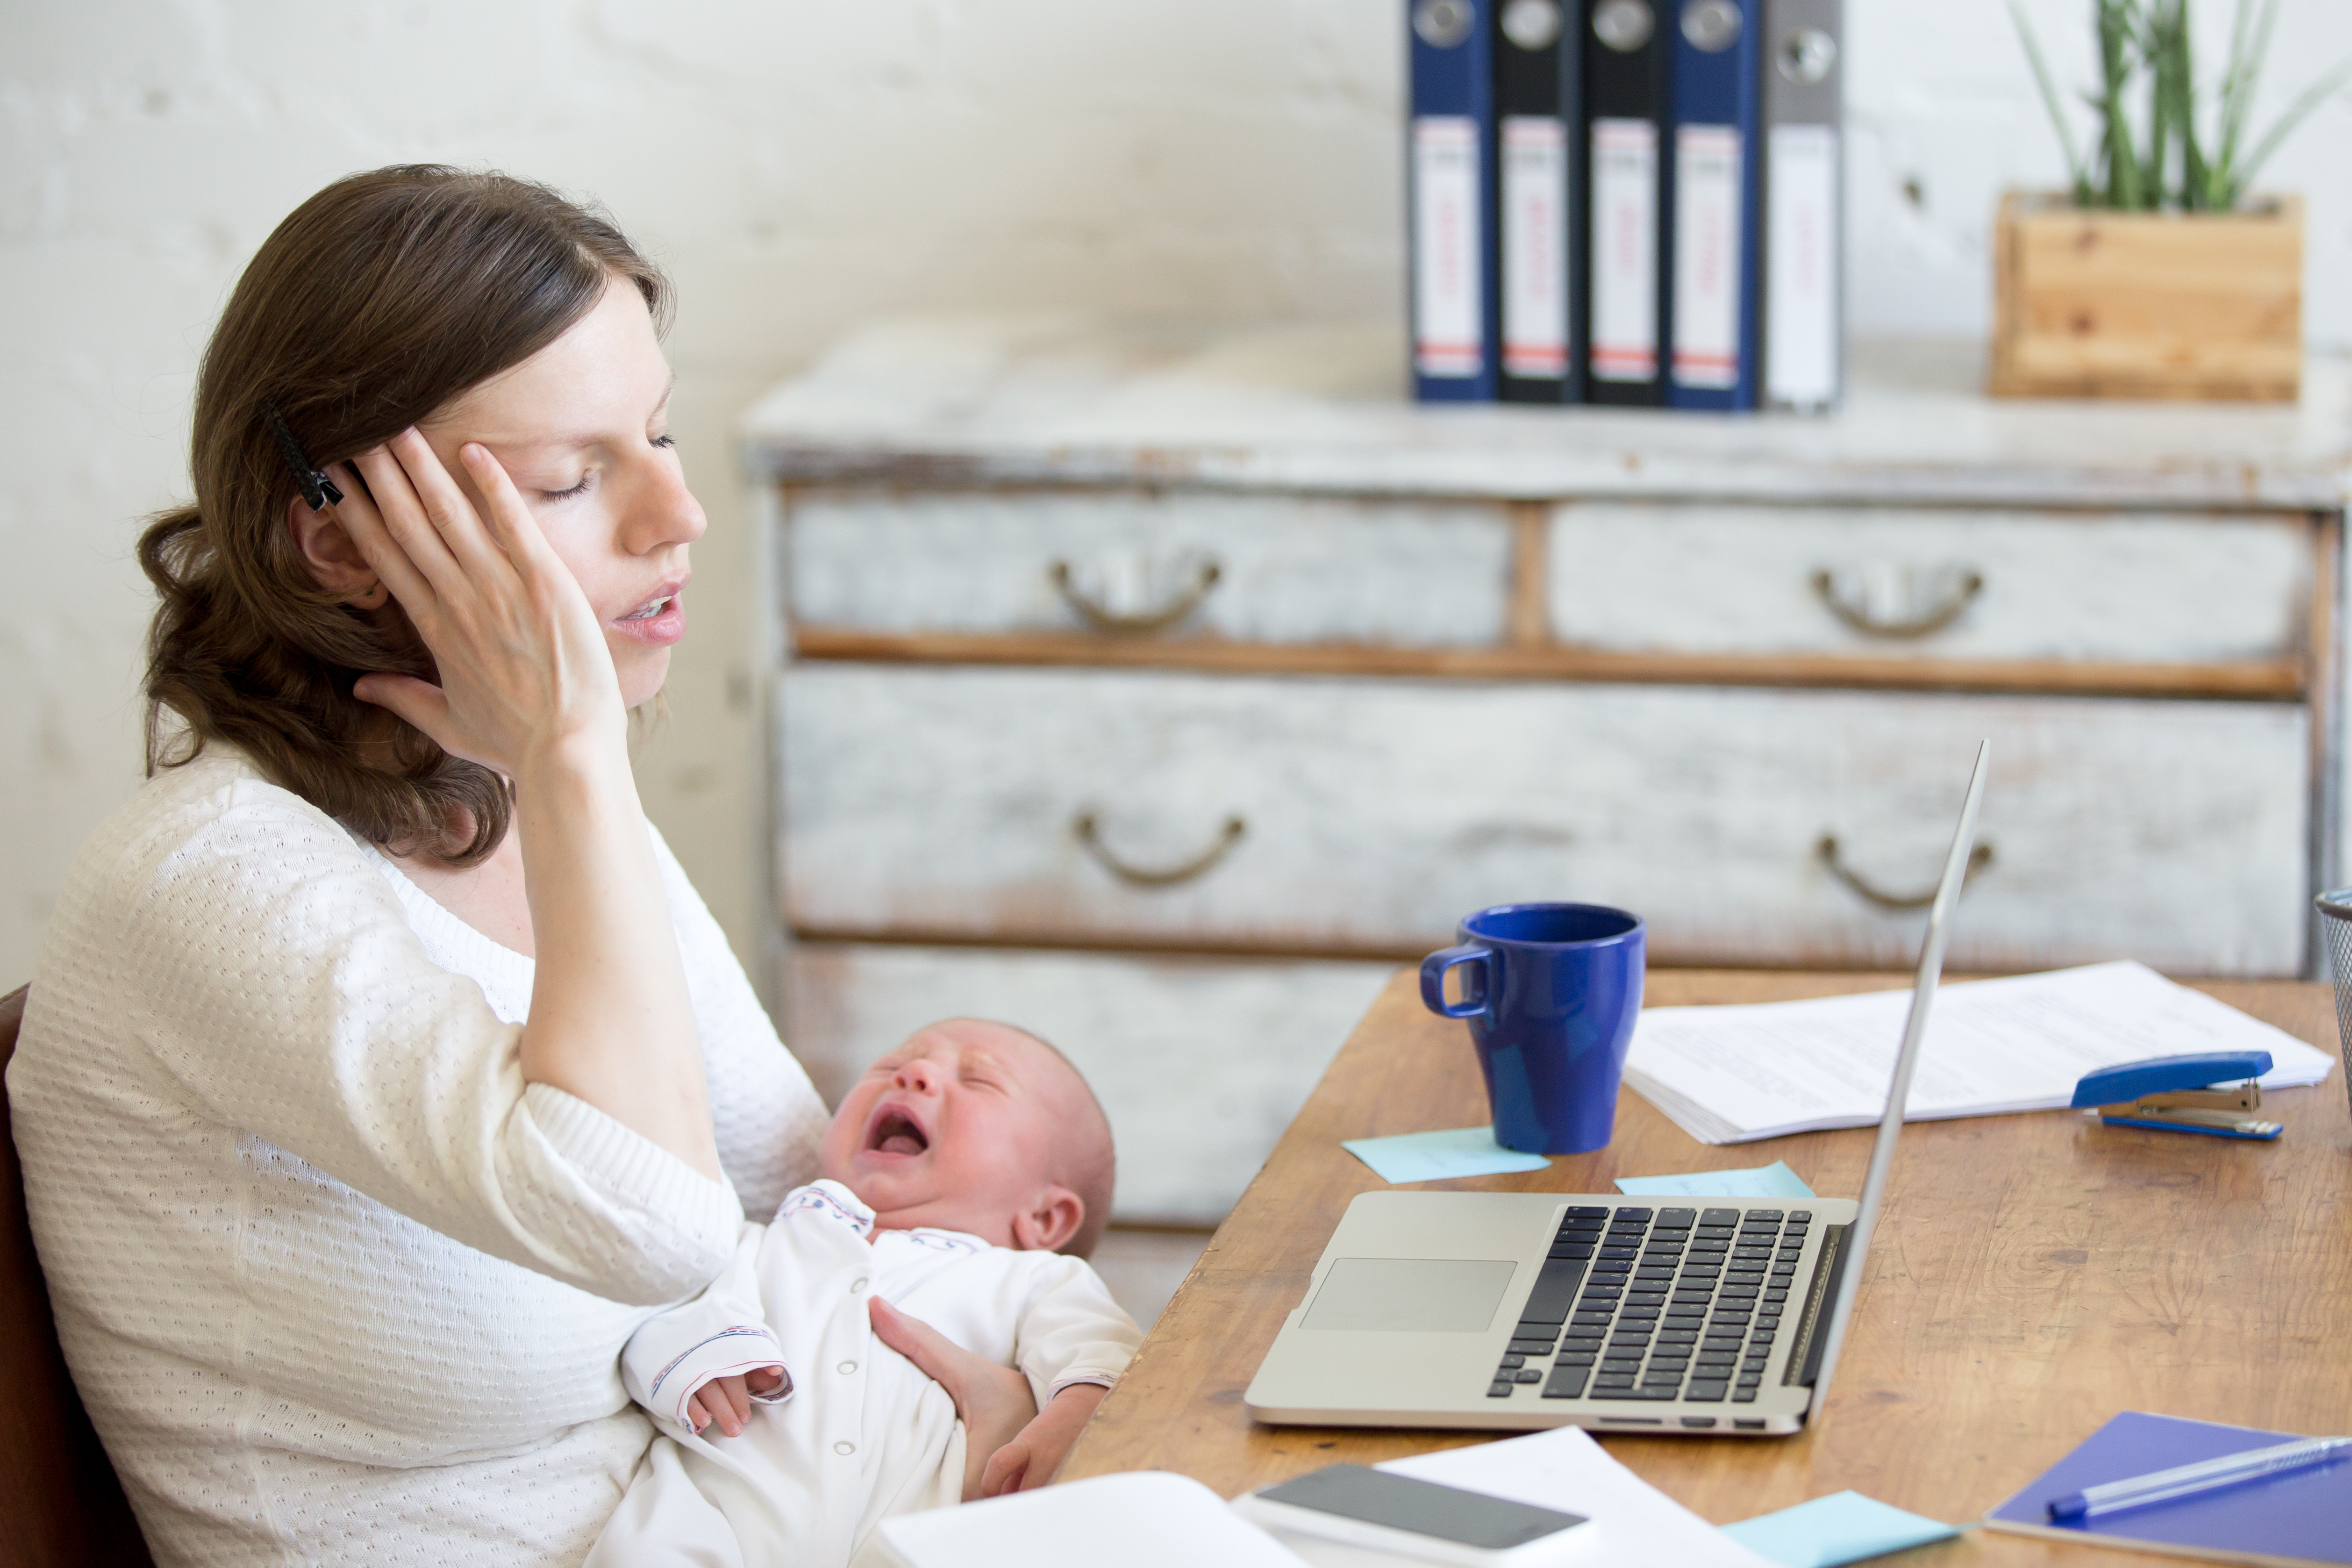 Une mère stressée | Source : Shutterstock